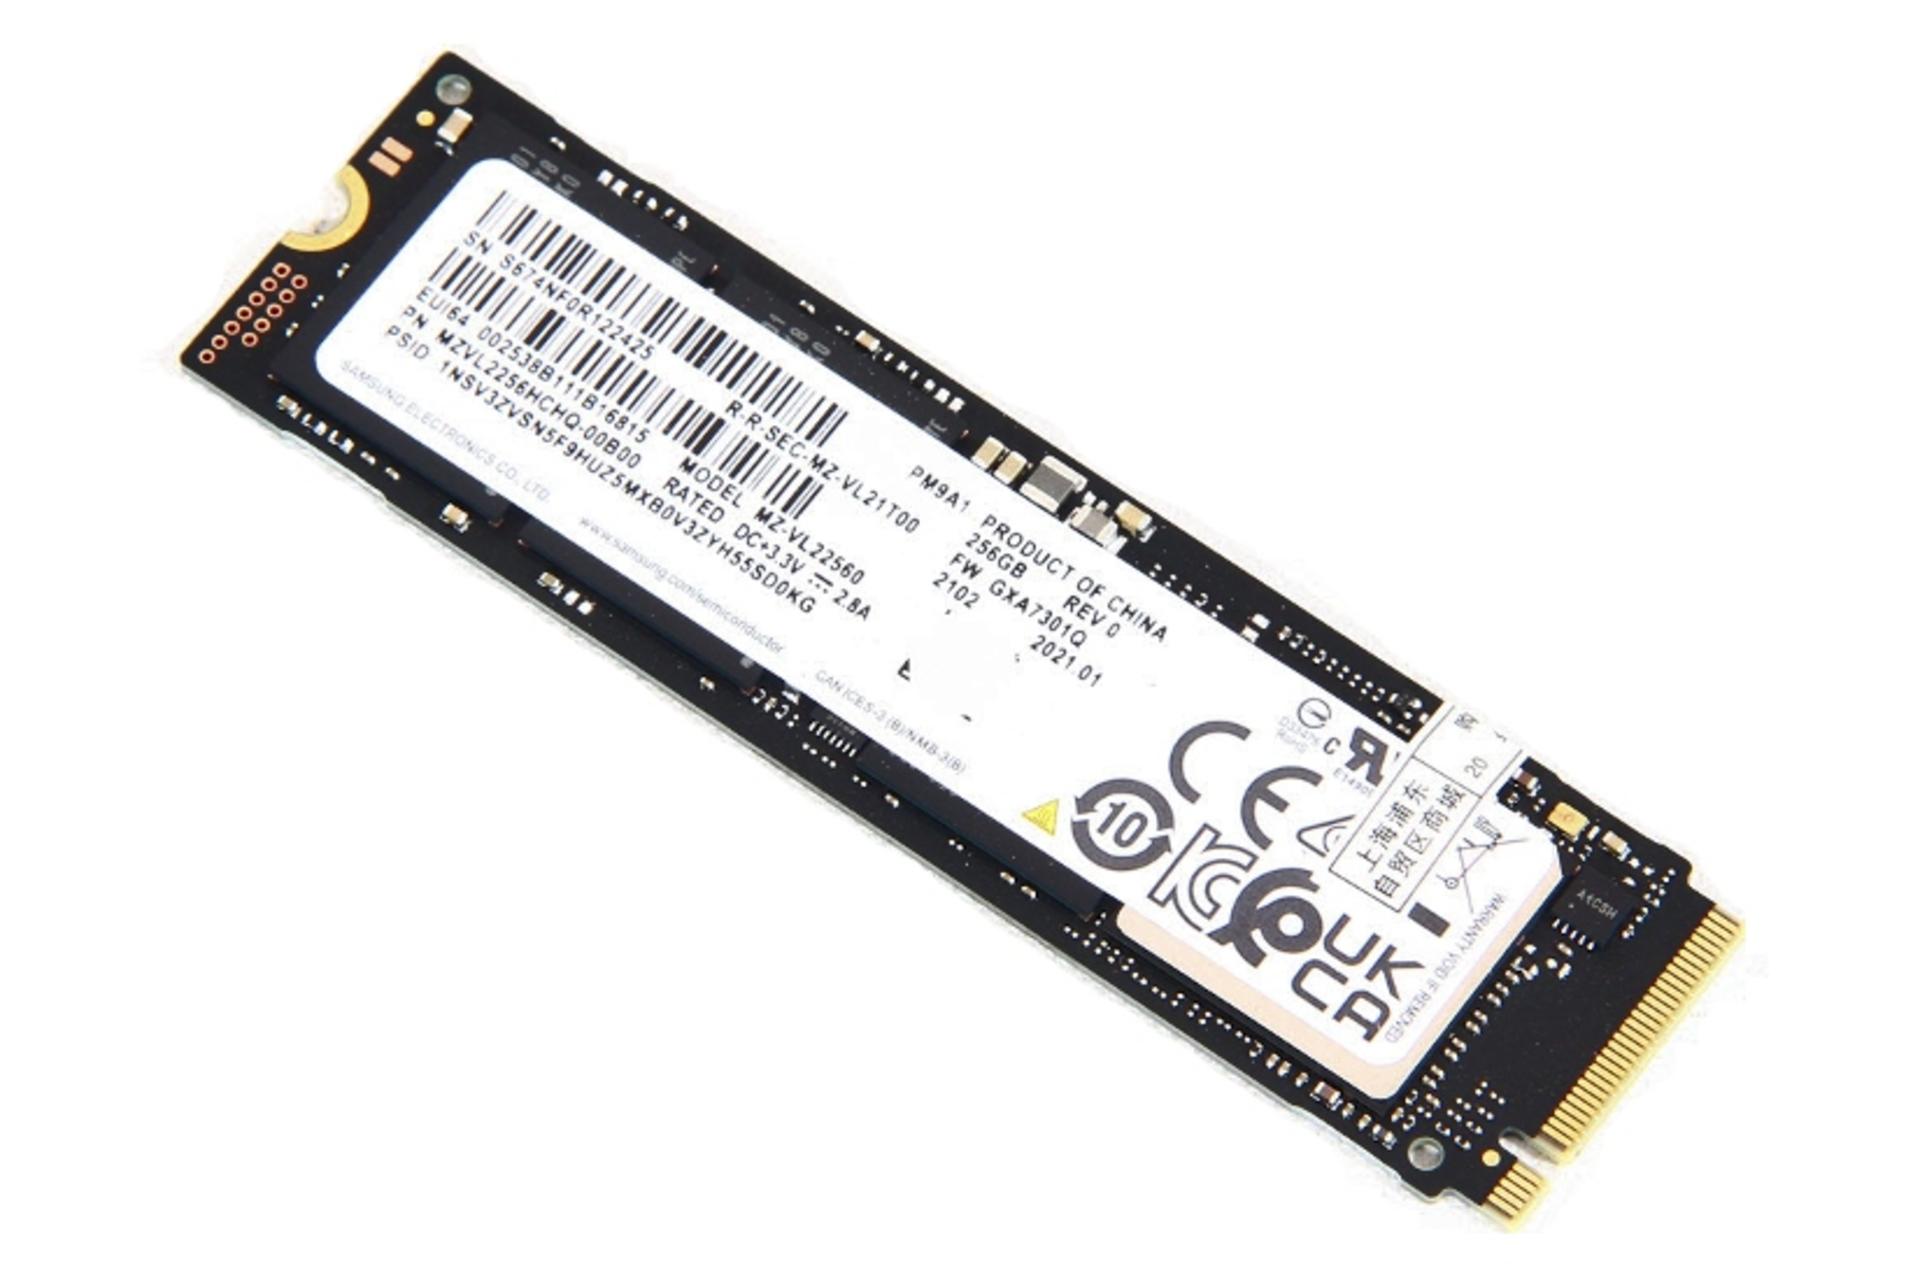 مرجع متخصصين ايران نماي روبرو SSD سامسونگ Samsung PM9A1 NVMe M.2 256GB ظرفيت 256 گيگابايت